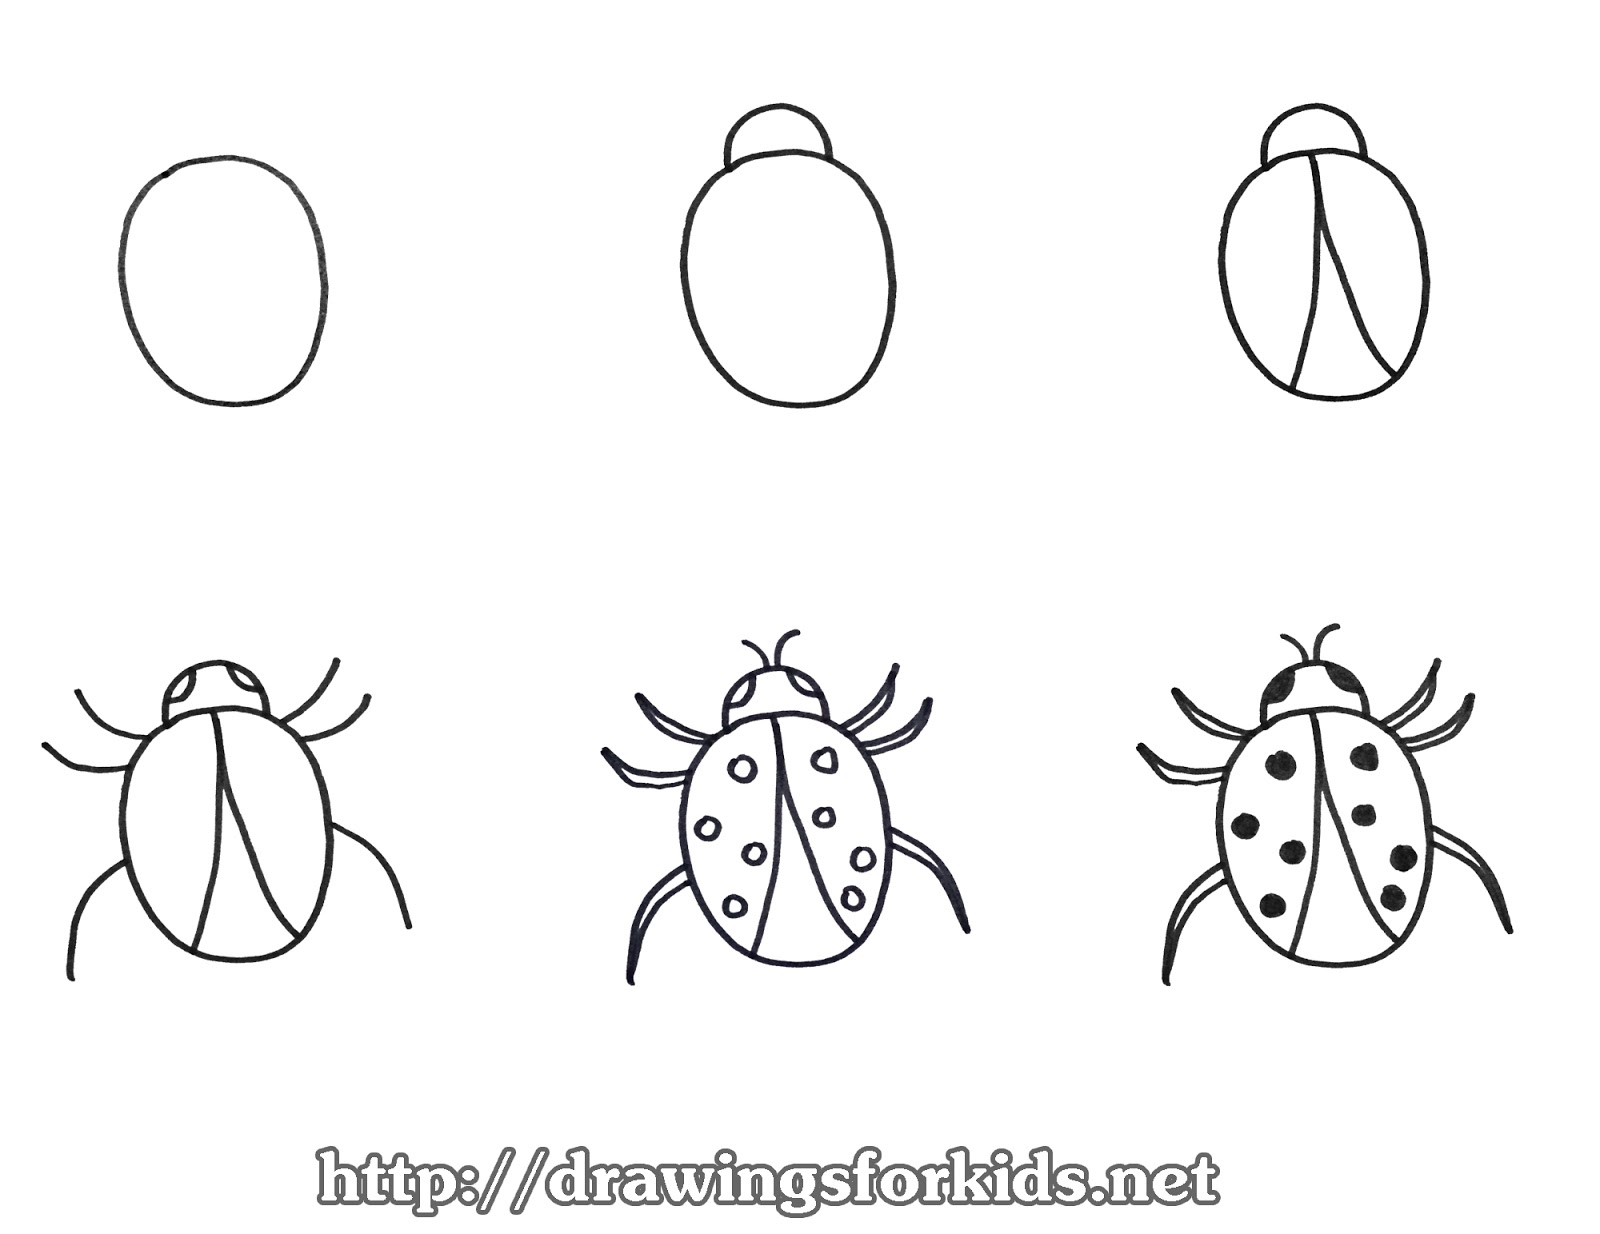 Hãy cho con yêu của bạn học cách vẽ bọ rùa đáng yêu với bức tranh vẽ bọ rùa dễ thương dành cho trẻ em. Họ sẽ được khám phá niềm đam mê của mình trong việc vẽ và sáng tạo, cùng với niềm vui và hạnh phúc khi hoàn thành tác phẩm của mình.